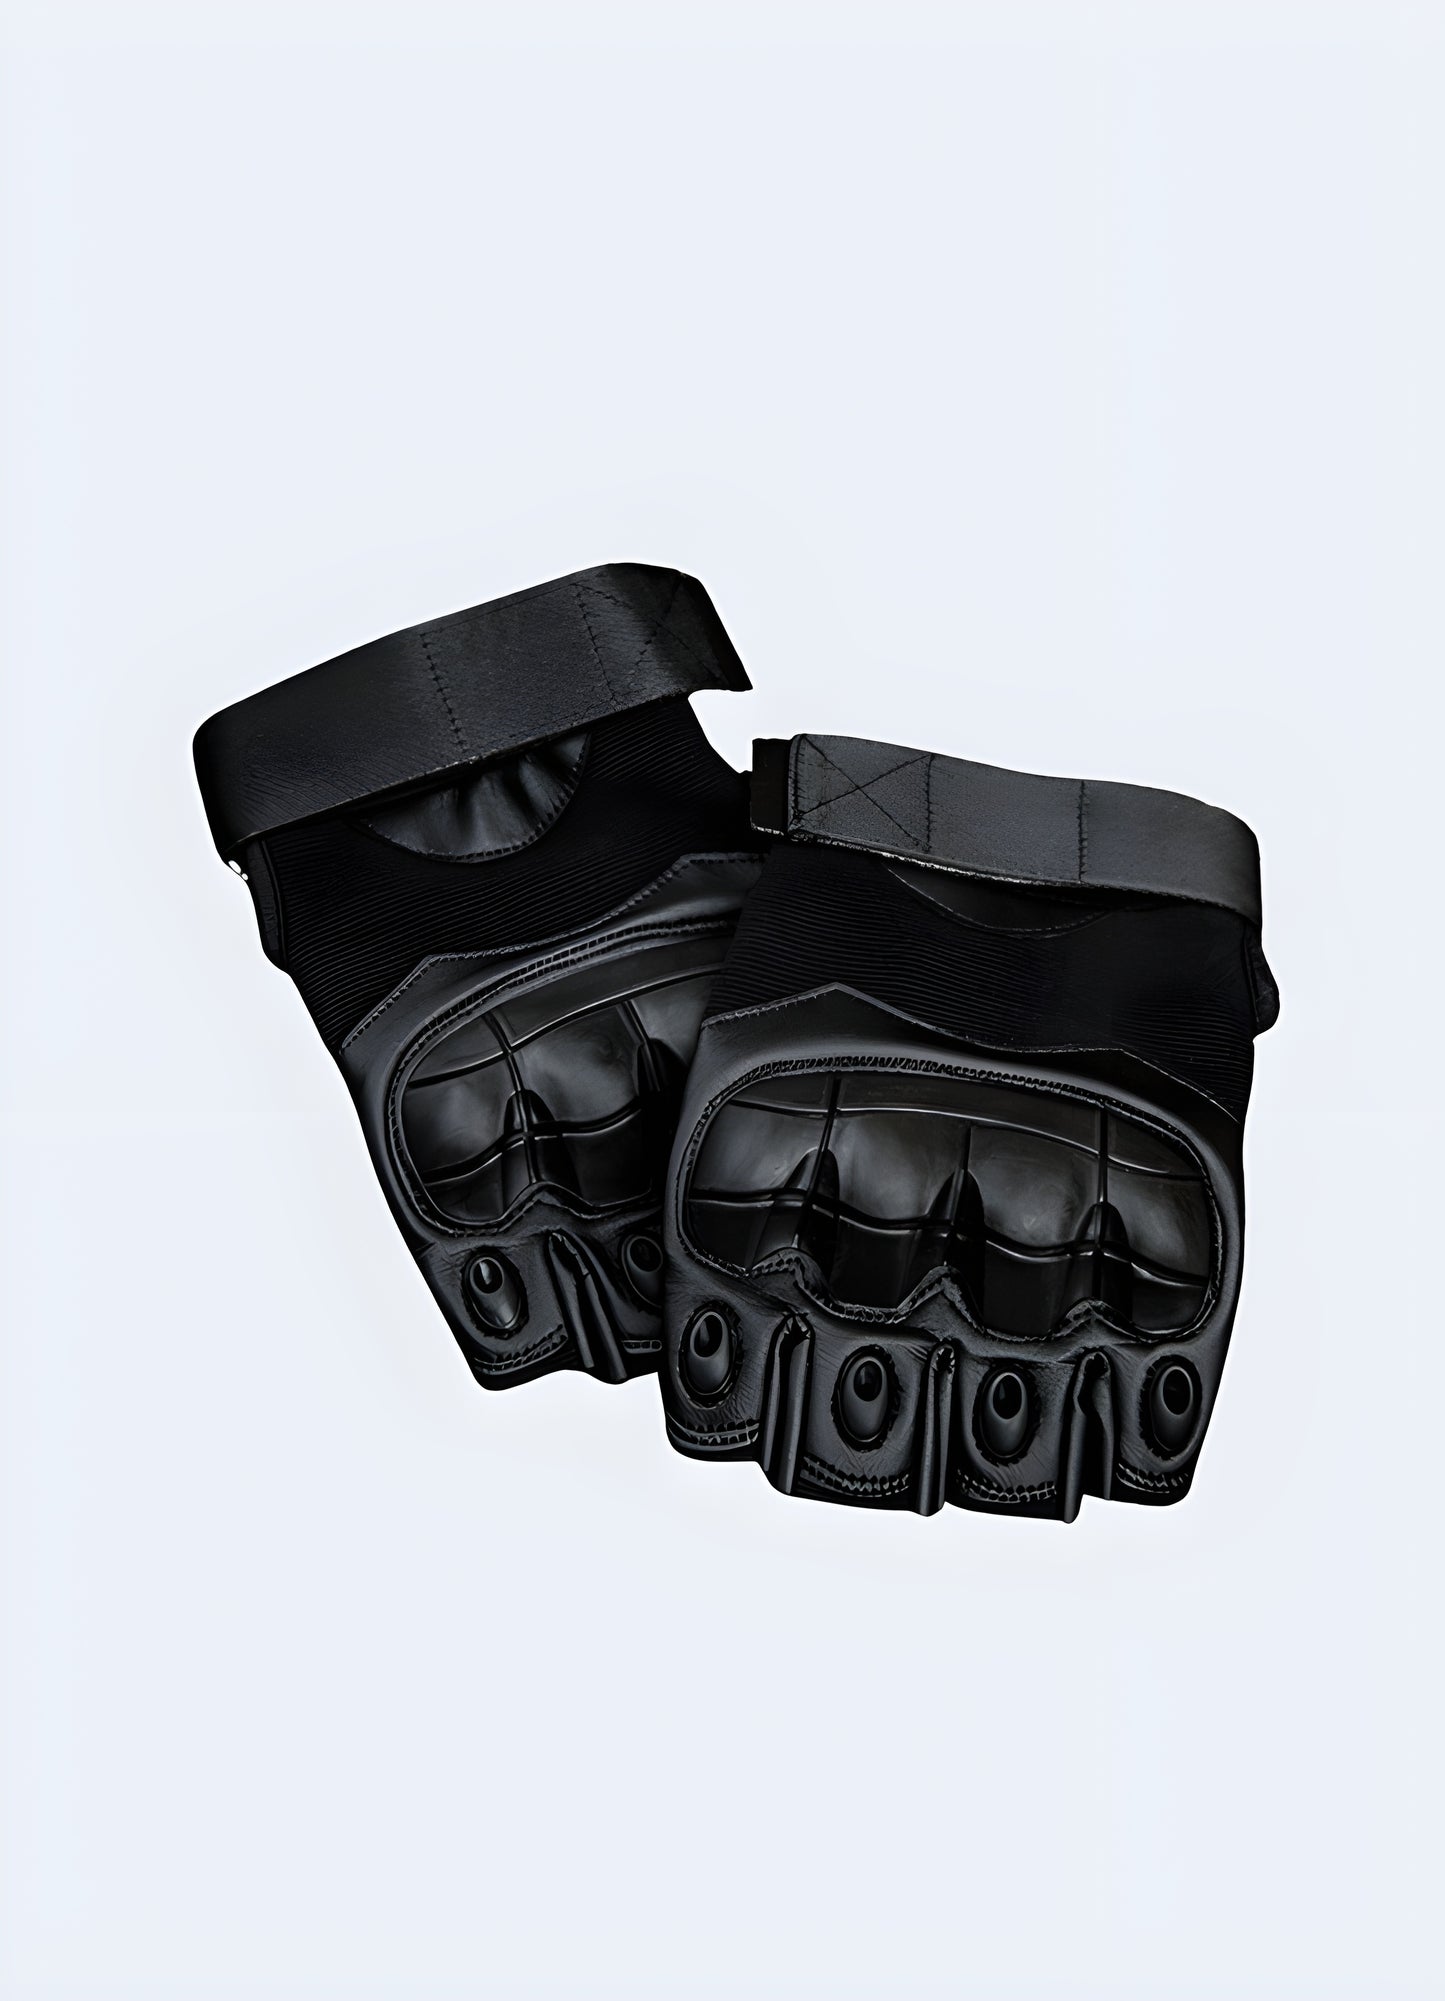 Techwear fingerless gloves black front view.